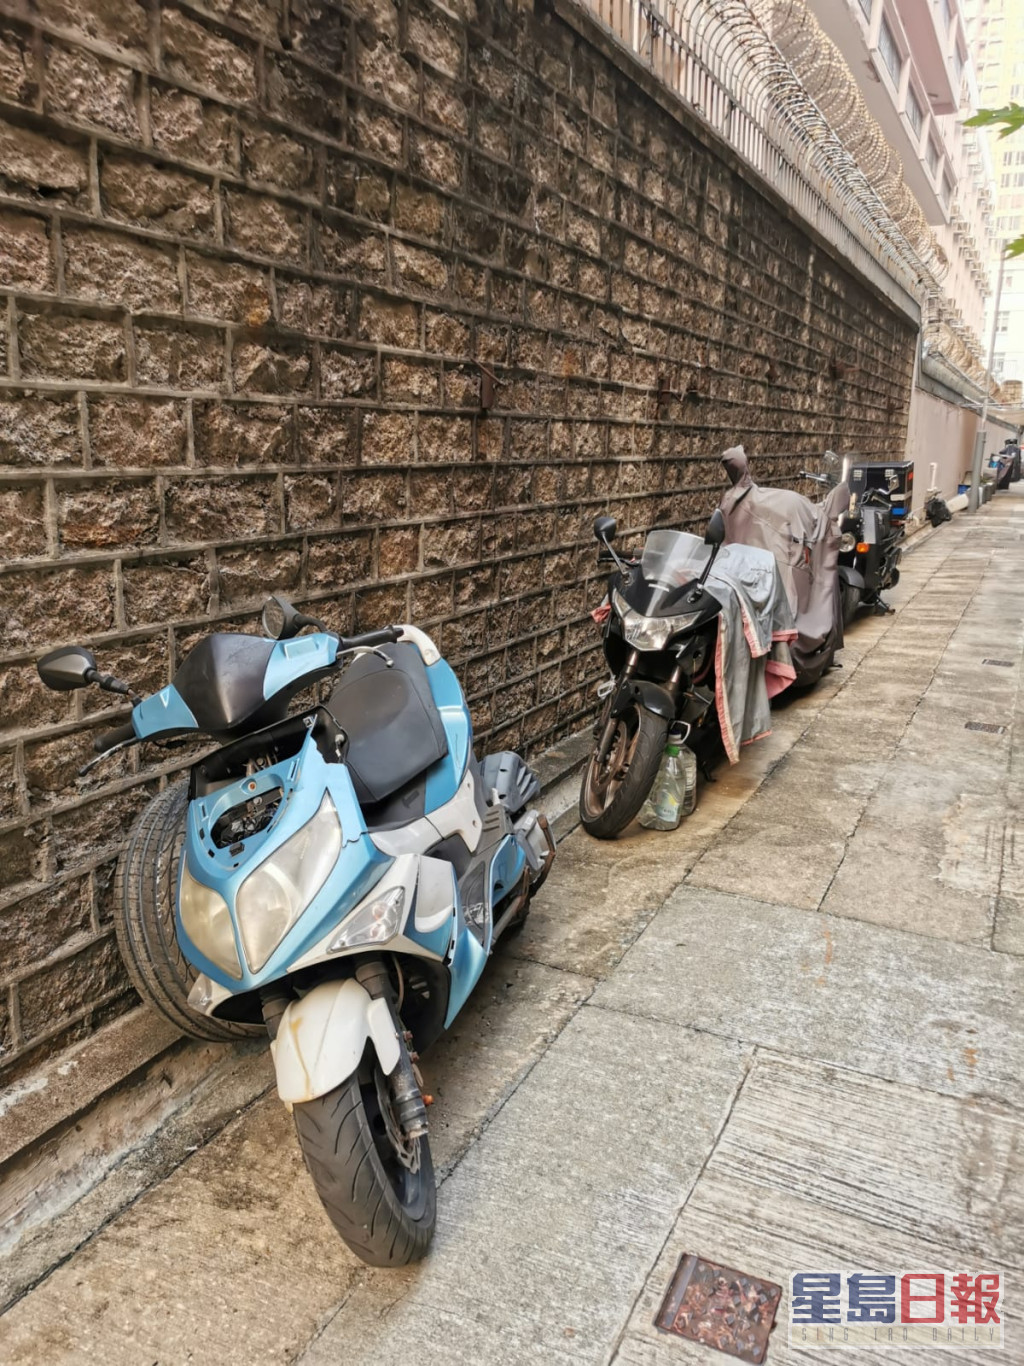 黄大仙翠凤街后巷有逾十架电单车闲置已久，大多被除去车牌，尘土盖满。 阿熊提供